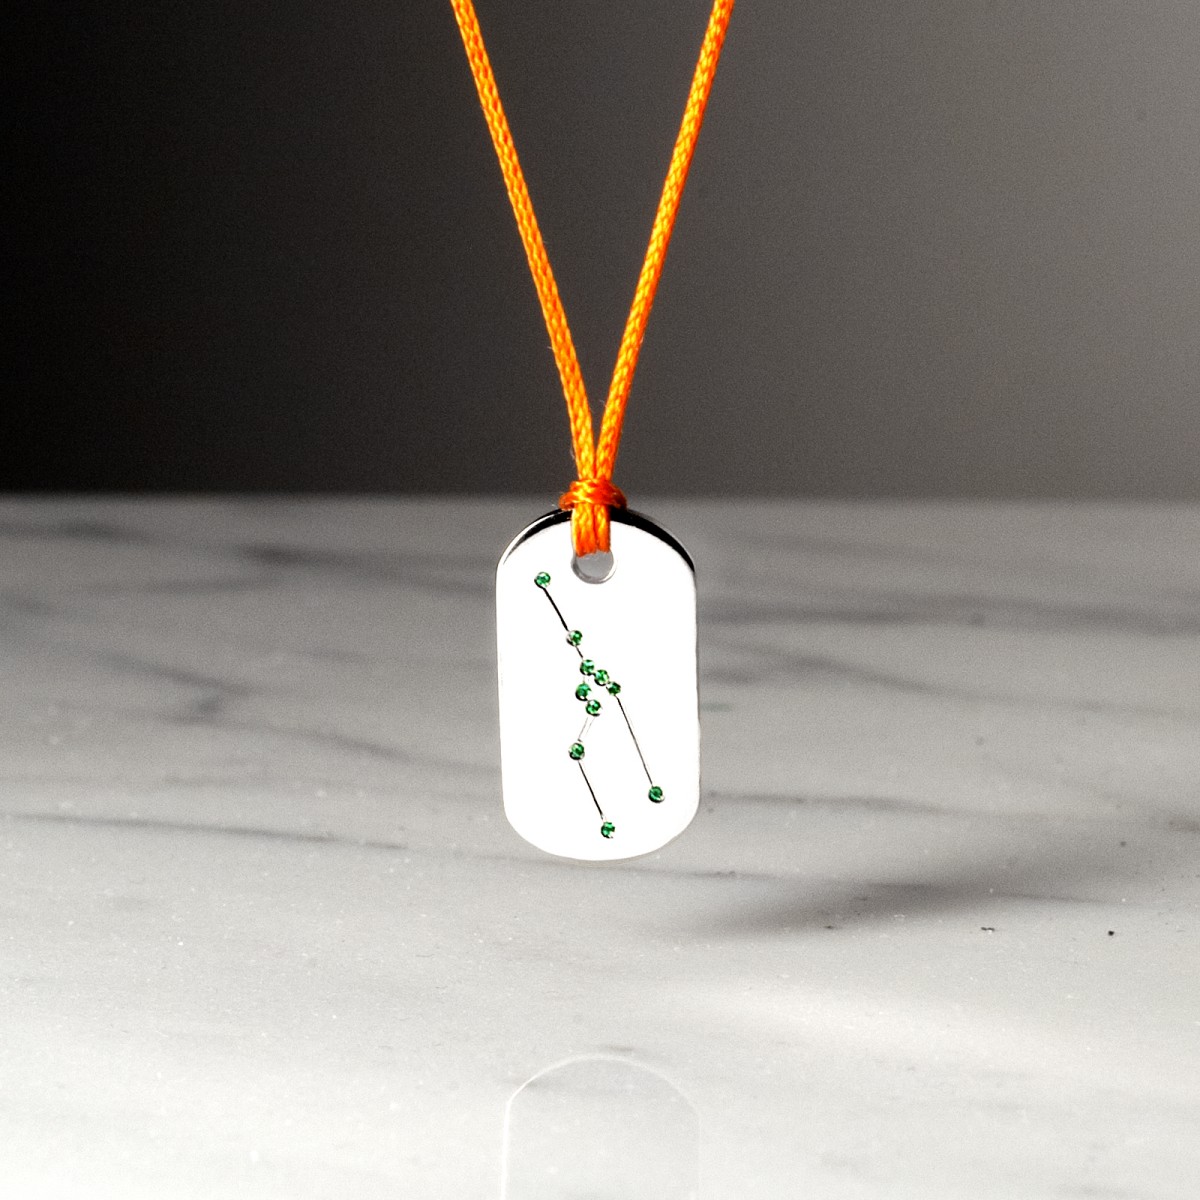 VOUS ÊTES TAUREAU - Necklace handcrafted by the Hervé Domar workshop